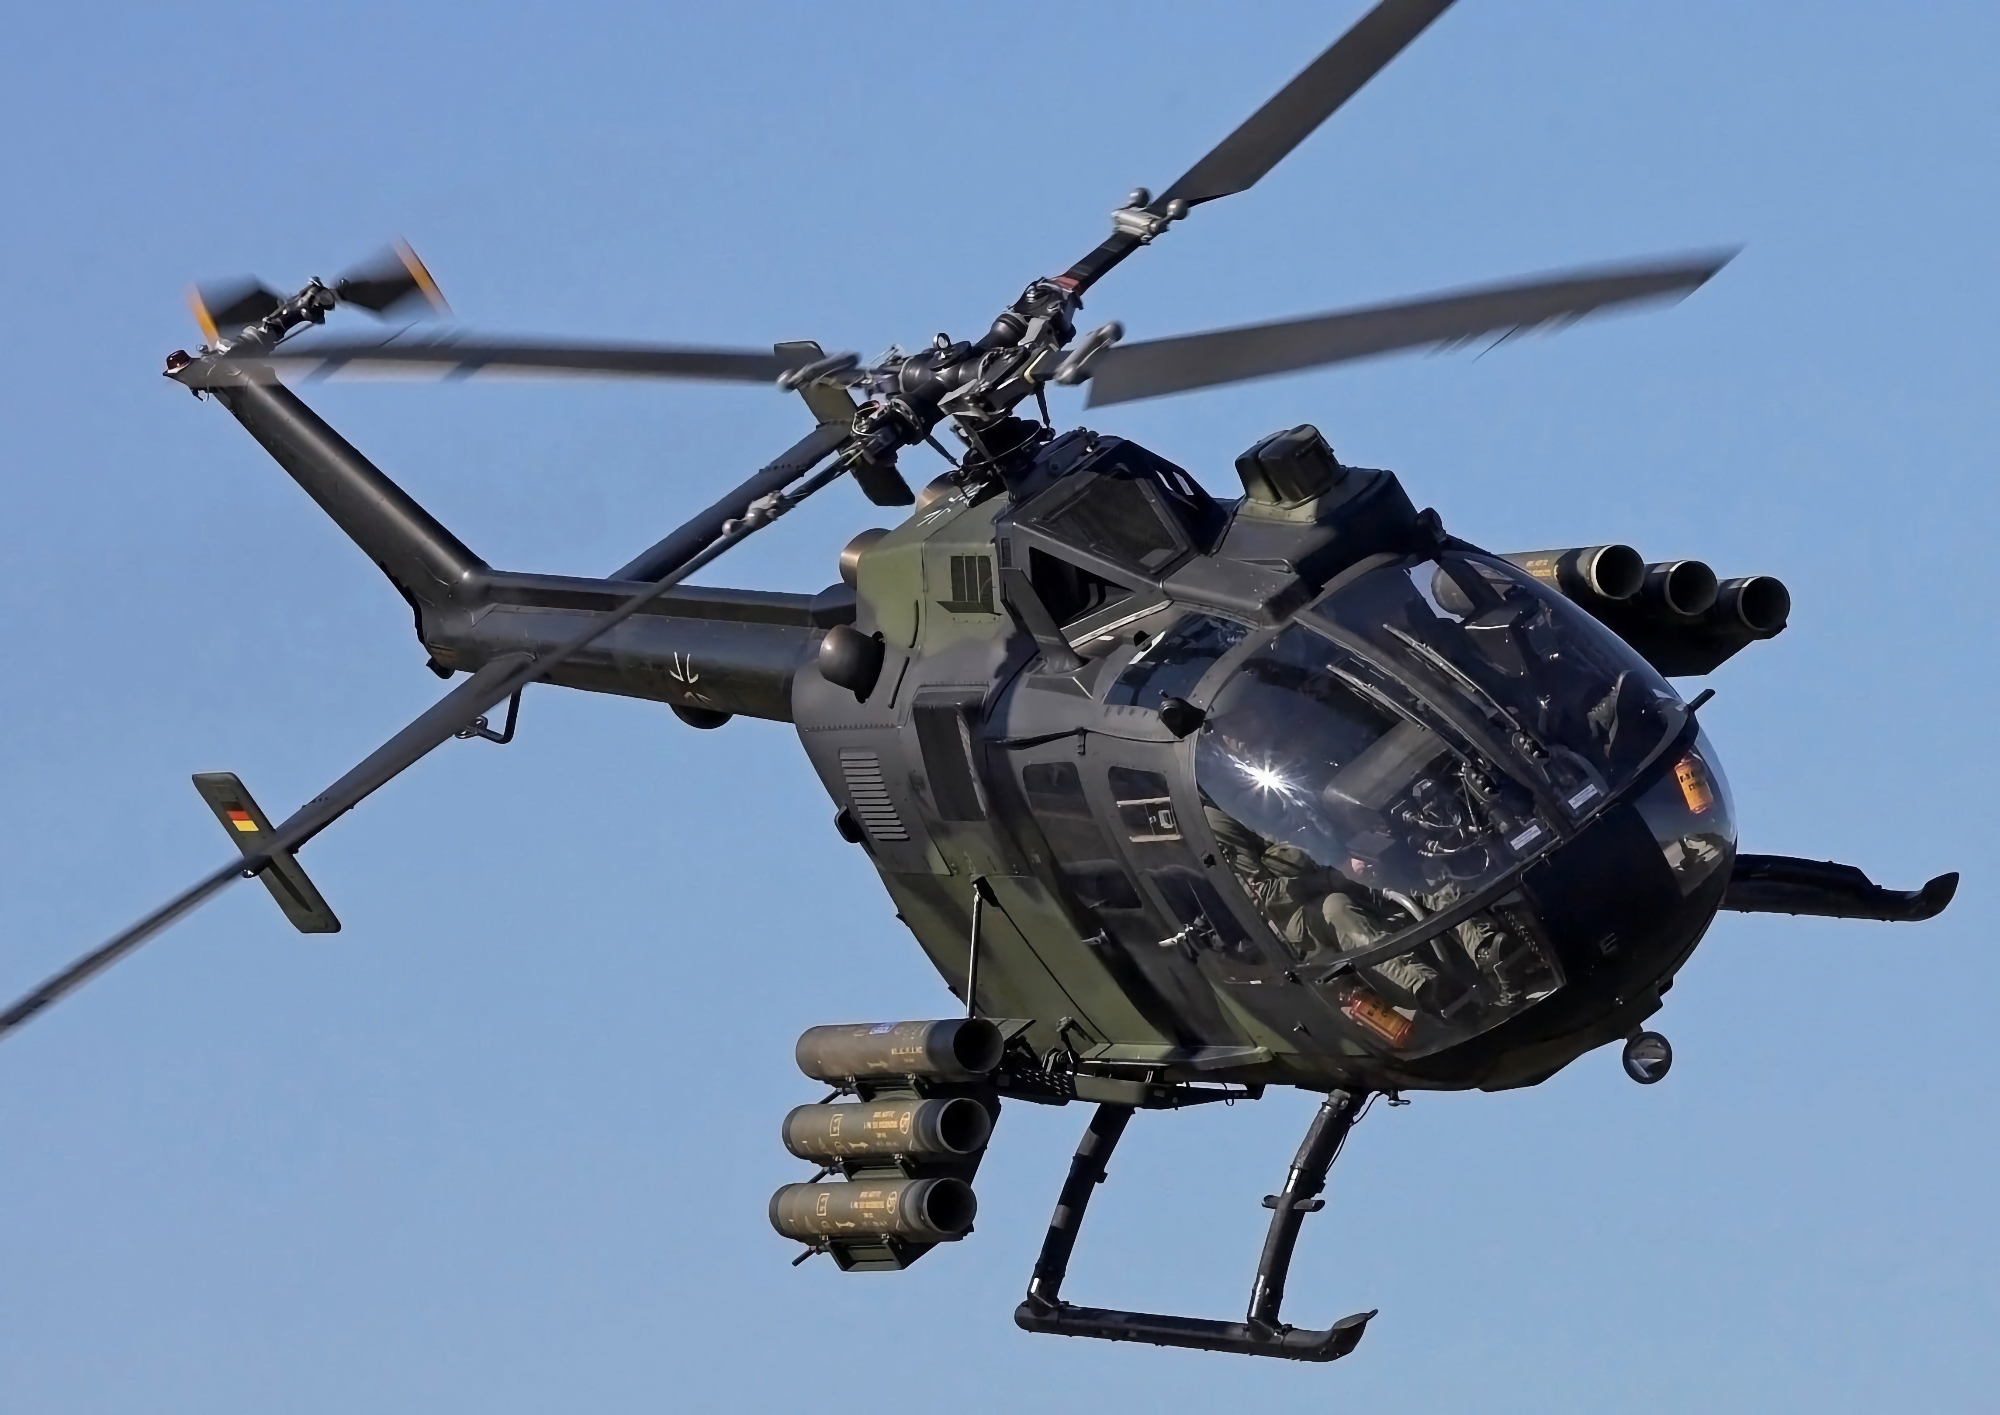 AFU vill få tyska helikoptrar av typen Bo 105-E4 och österrikiska motorcyklar av typen KTM 450 EXC för beväpning